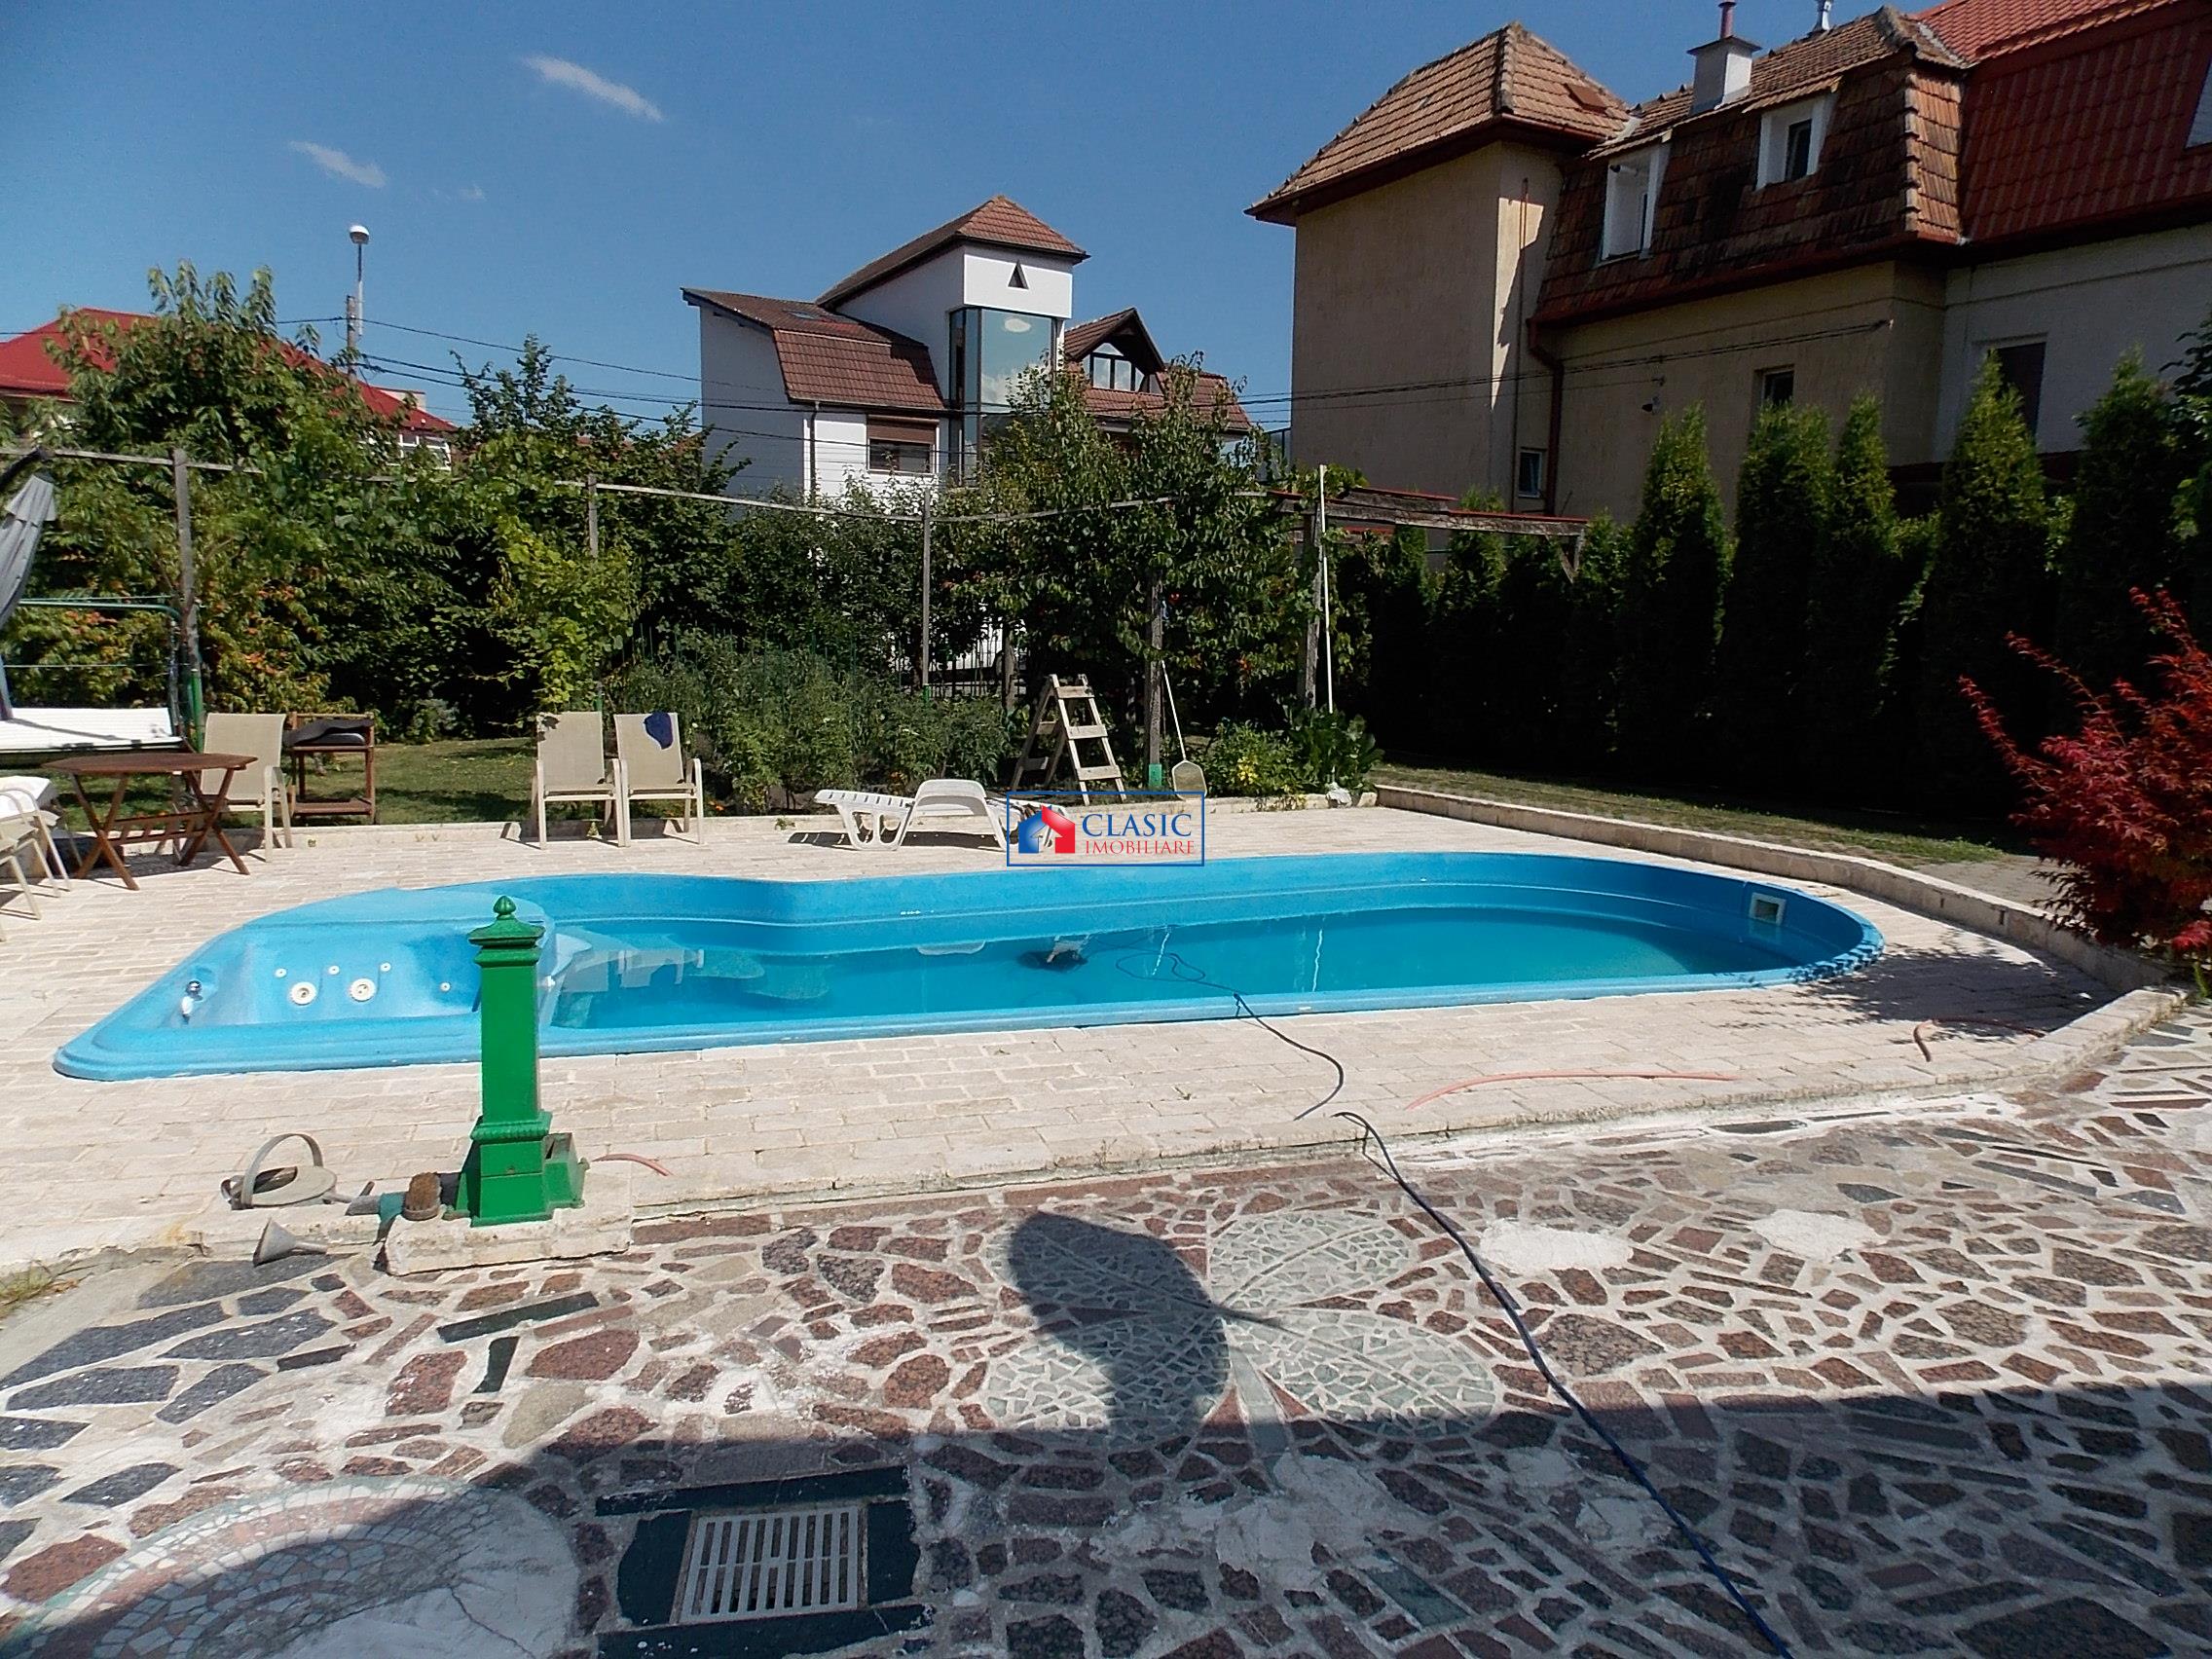 Inchiriere casa cu piscina A.Muresanu, Cluj Napoca